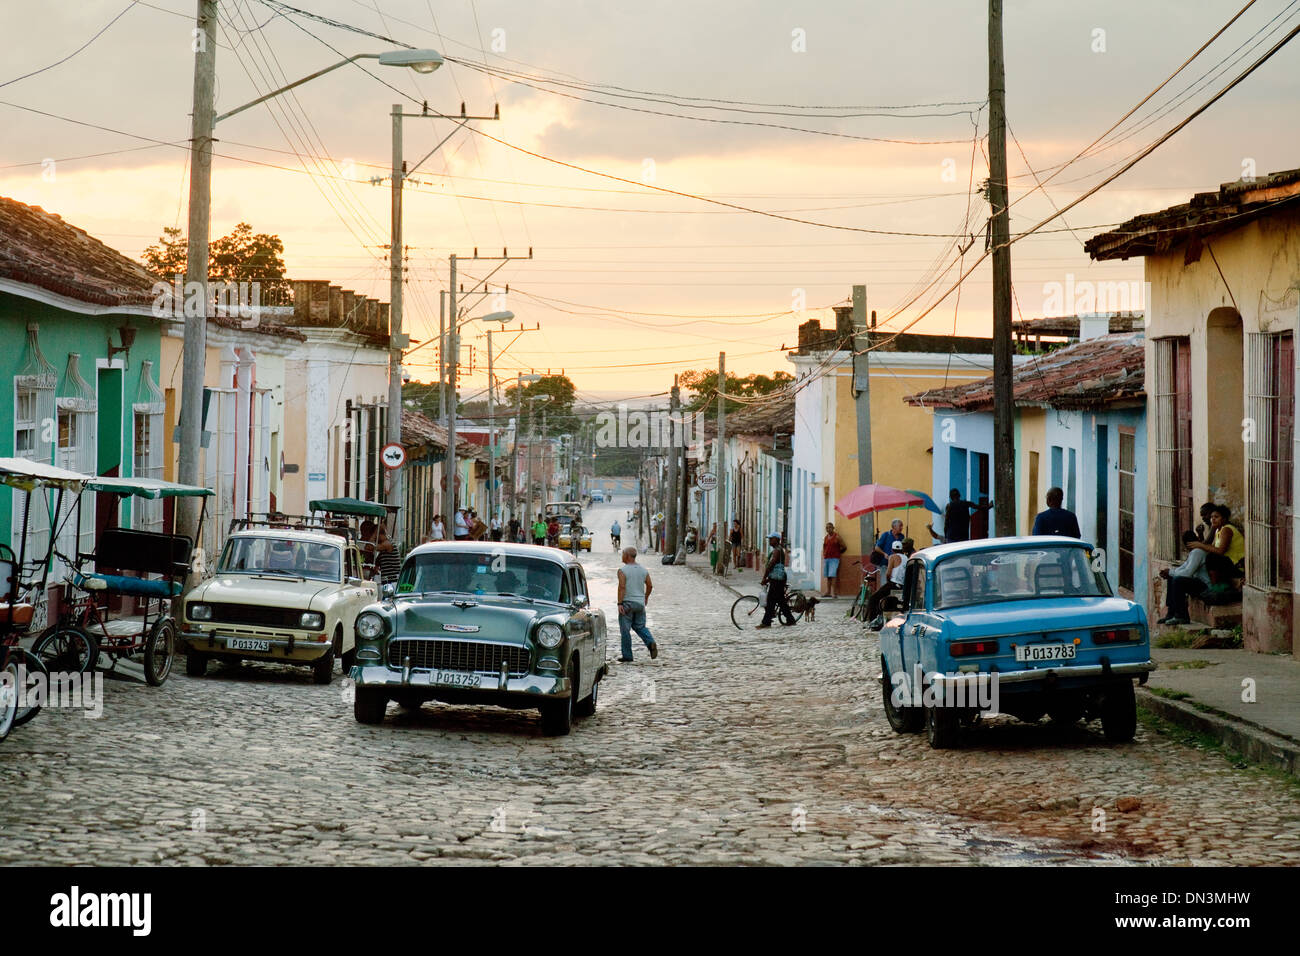 Trinidad, Kuba - ein Sonnenuntergang Straßenszene mit alten amerikanischen Autos auf der Straße, Trinidad, Kuba, Karibik, Lateinamerika Stockfoto